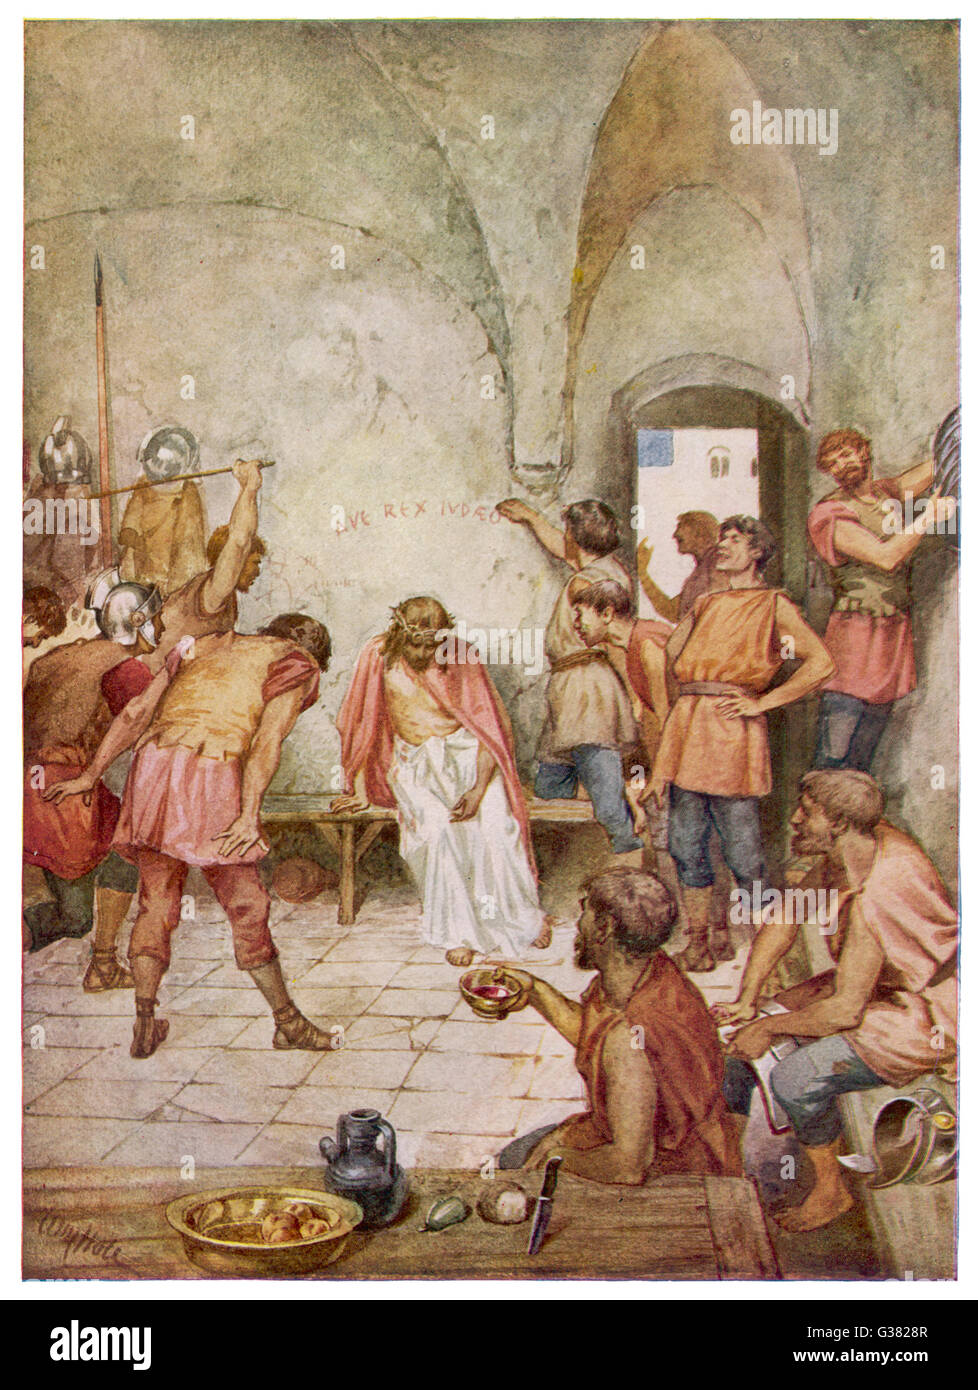 Jésus est donné une couronne d'épines par les moqueries des soldats romains Banque D'Images